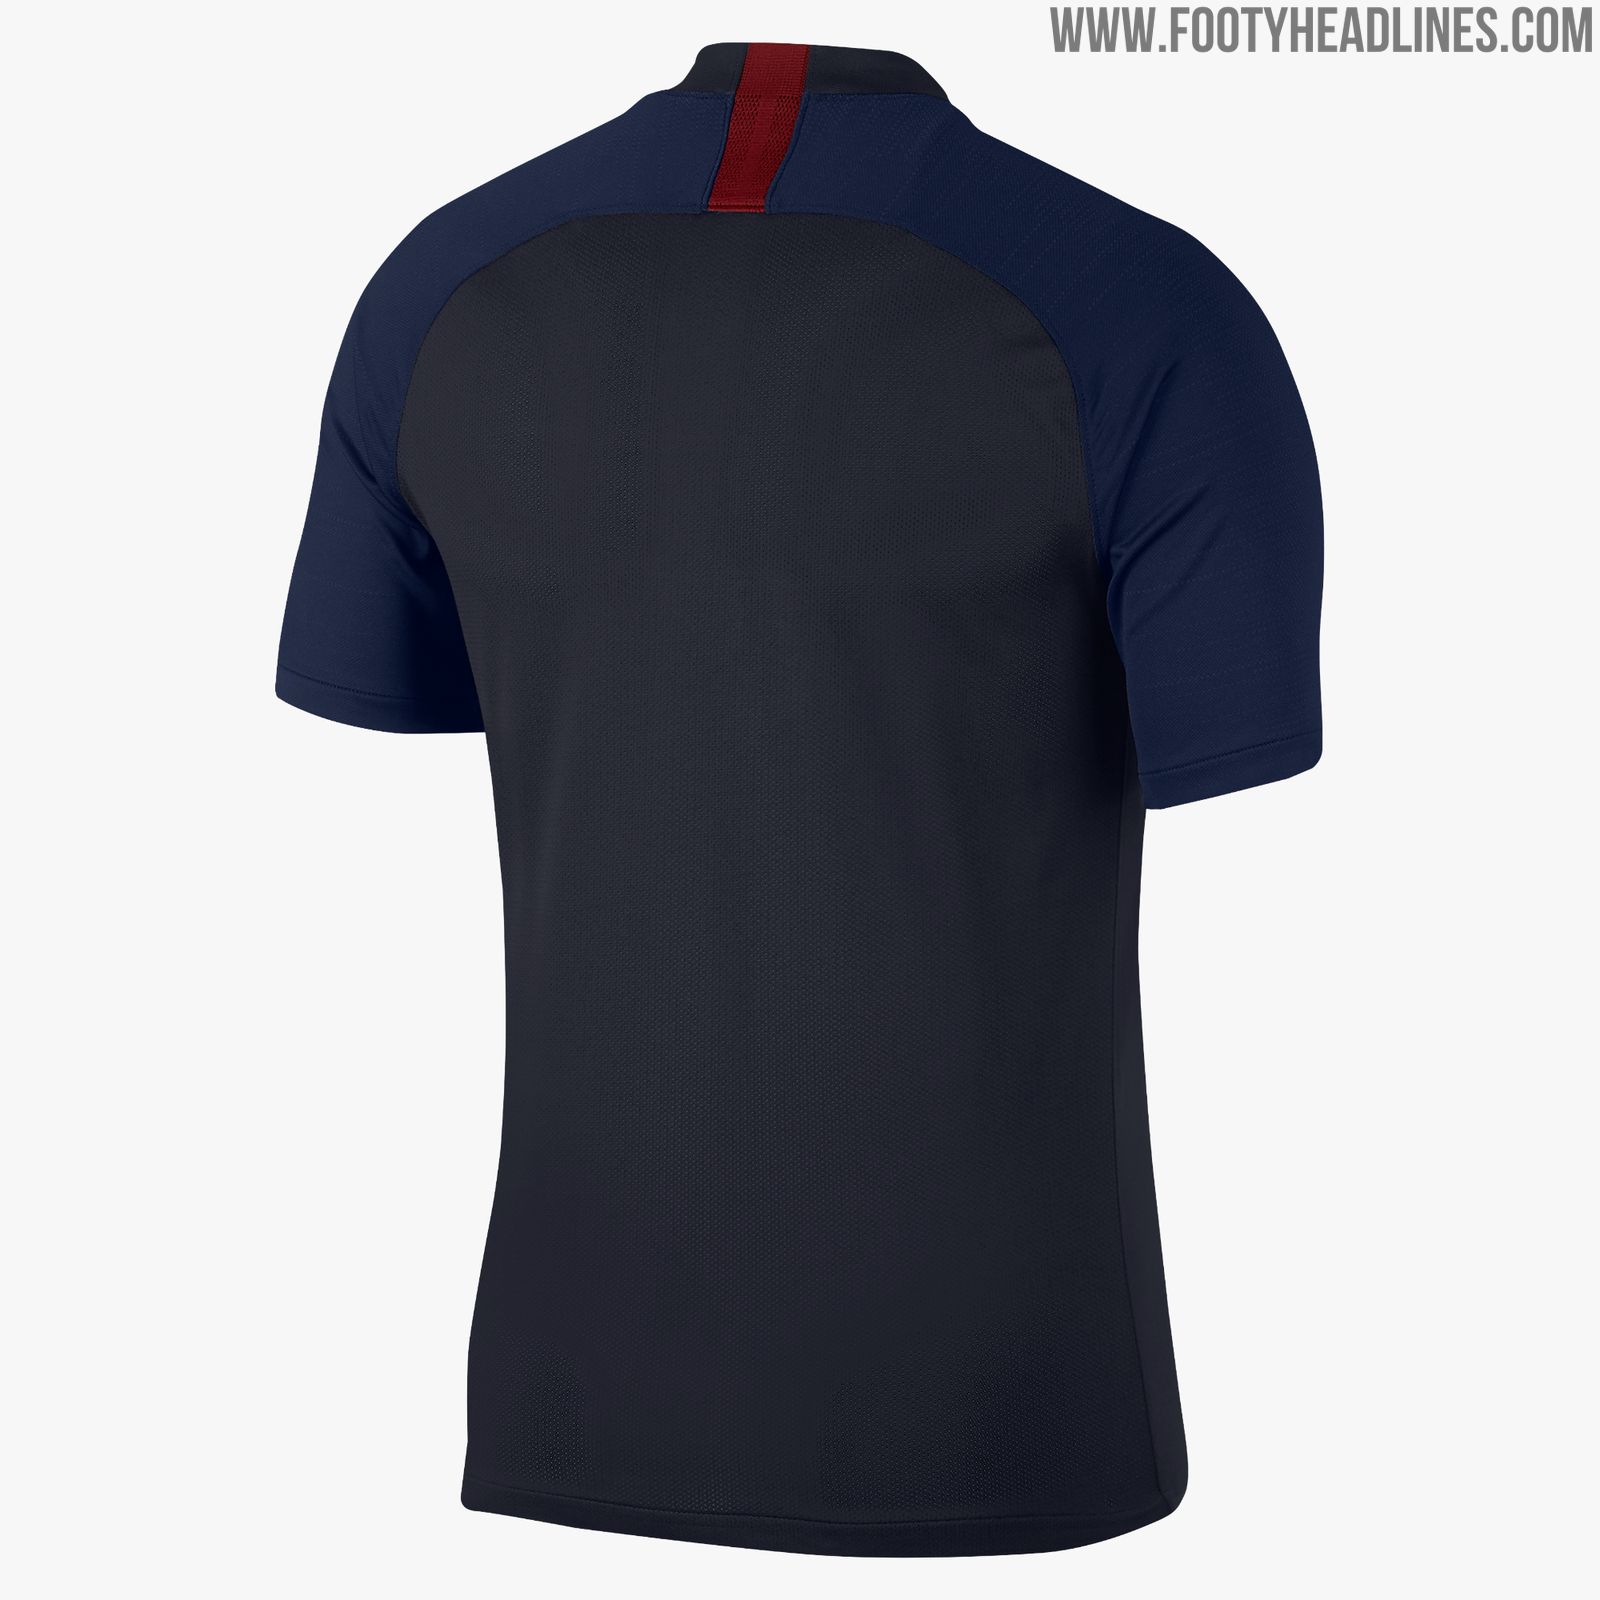 Nike Roma 19-20 Training Kit Released - Footy Headlines